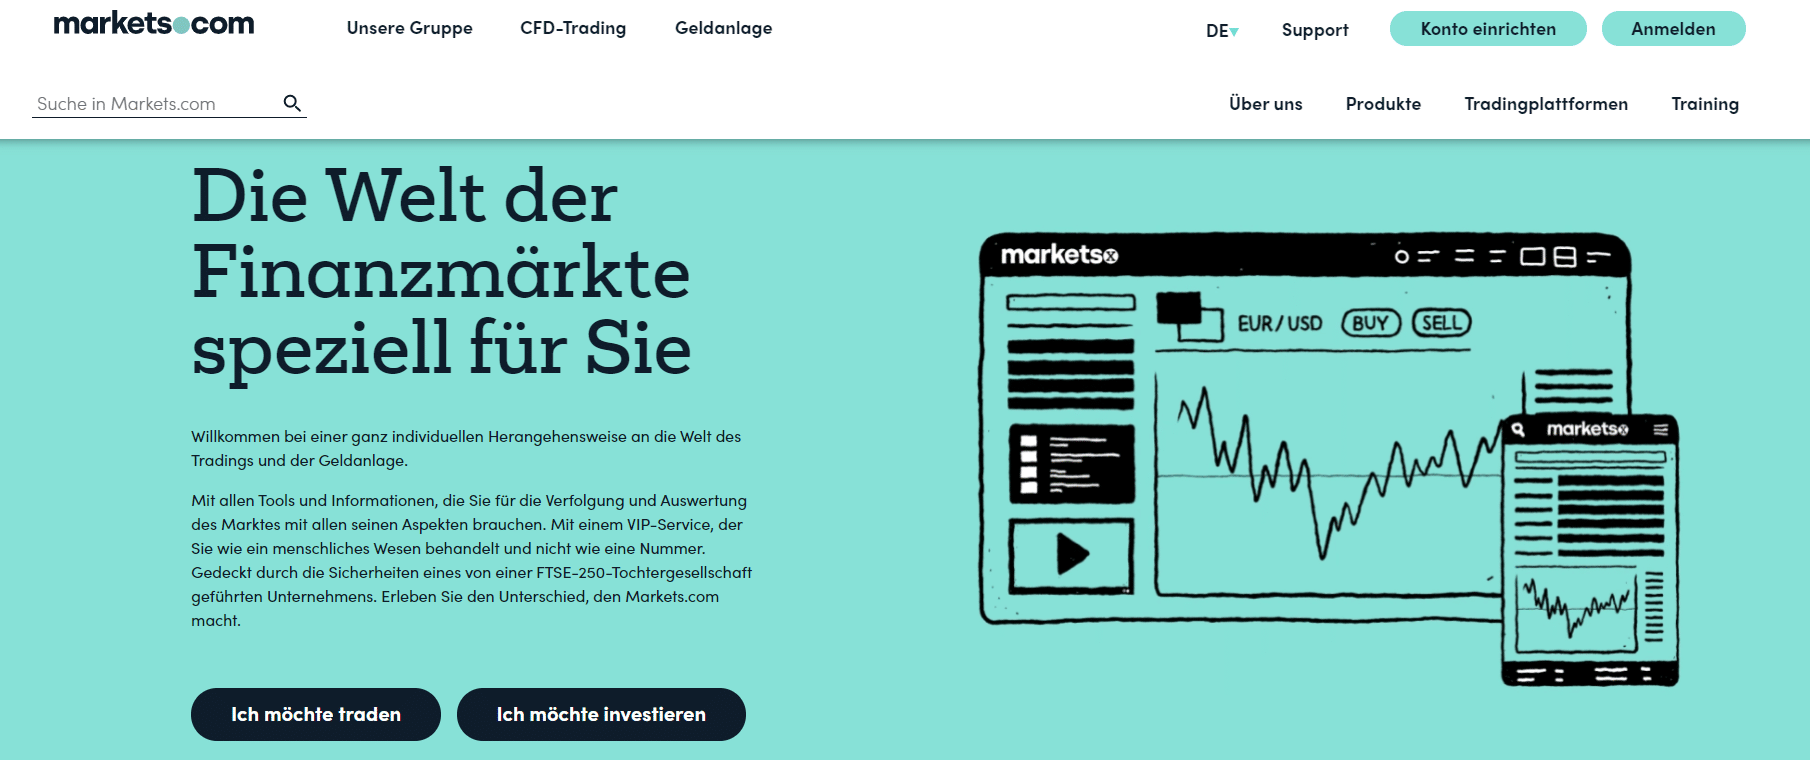 markets.com website